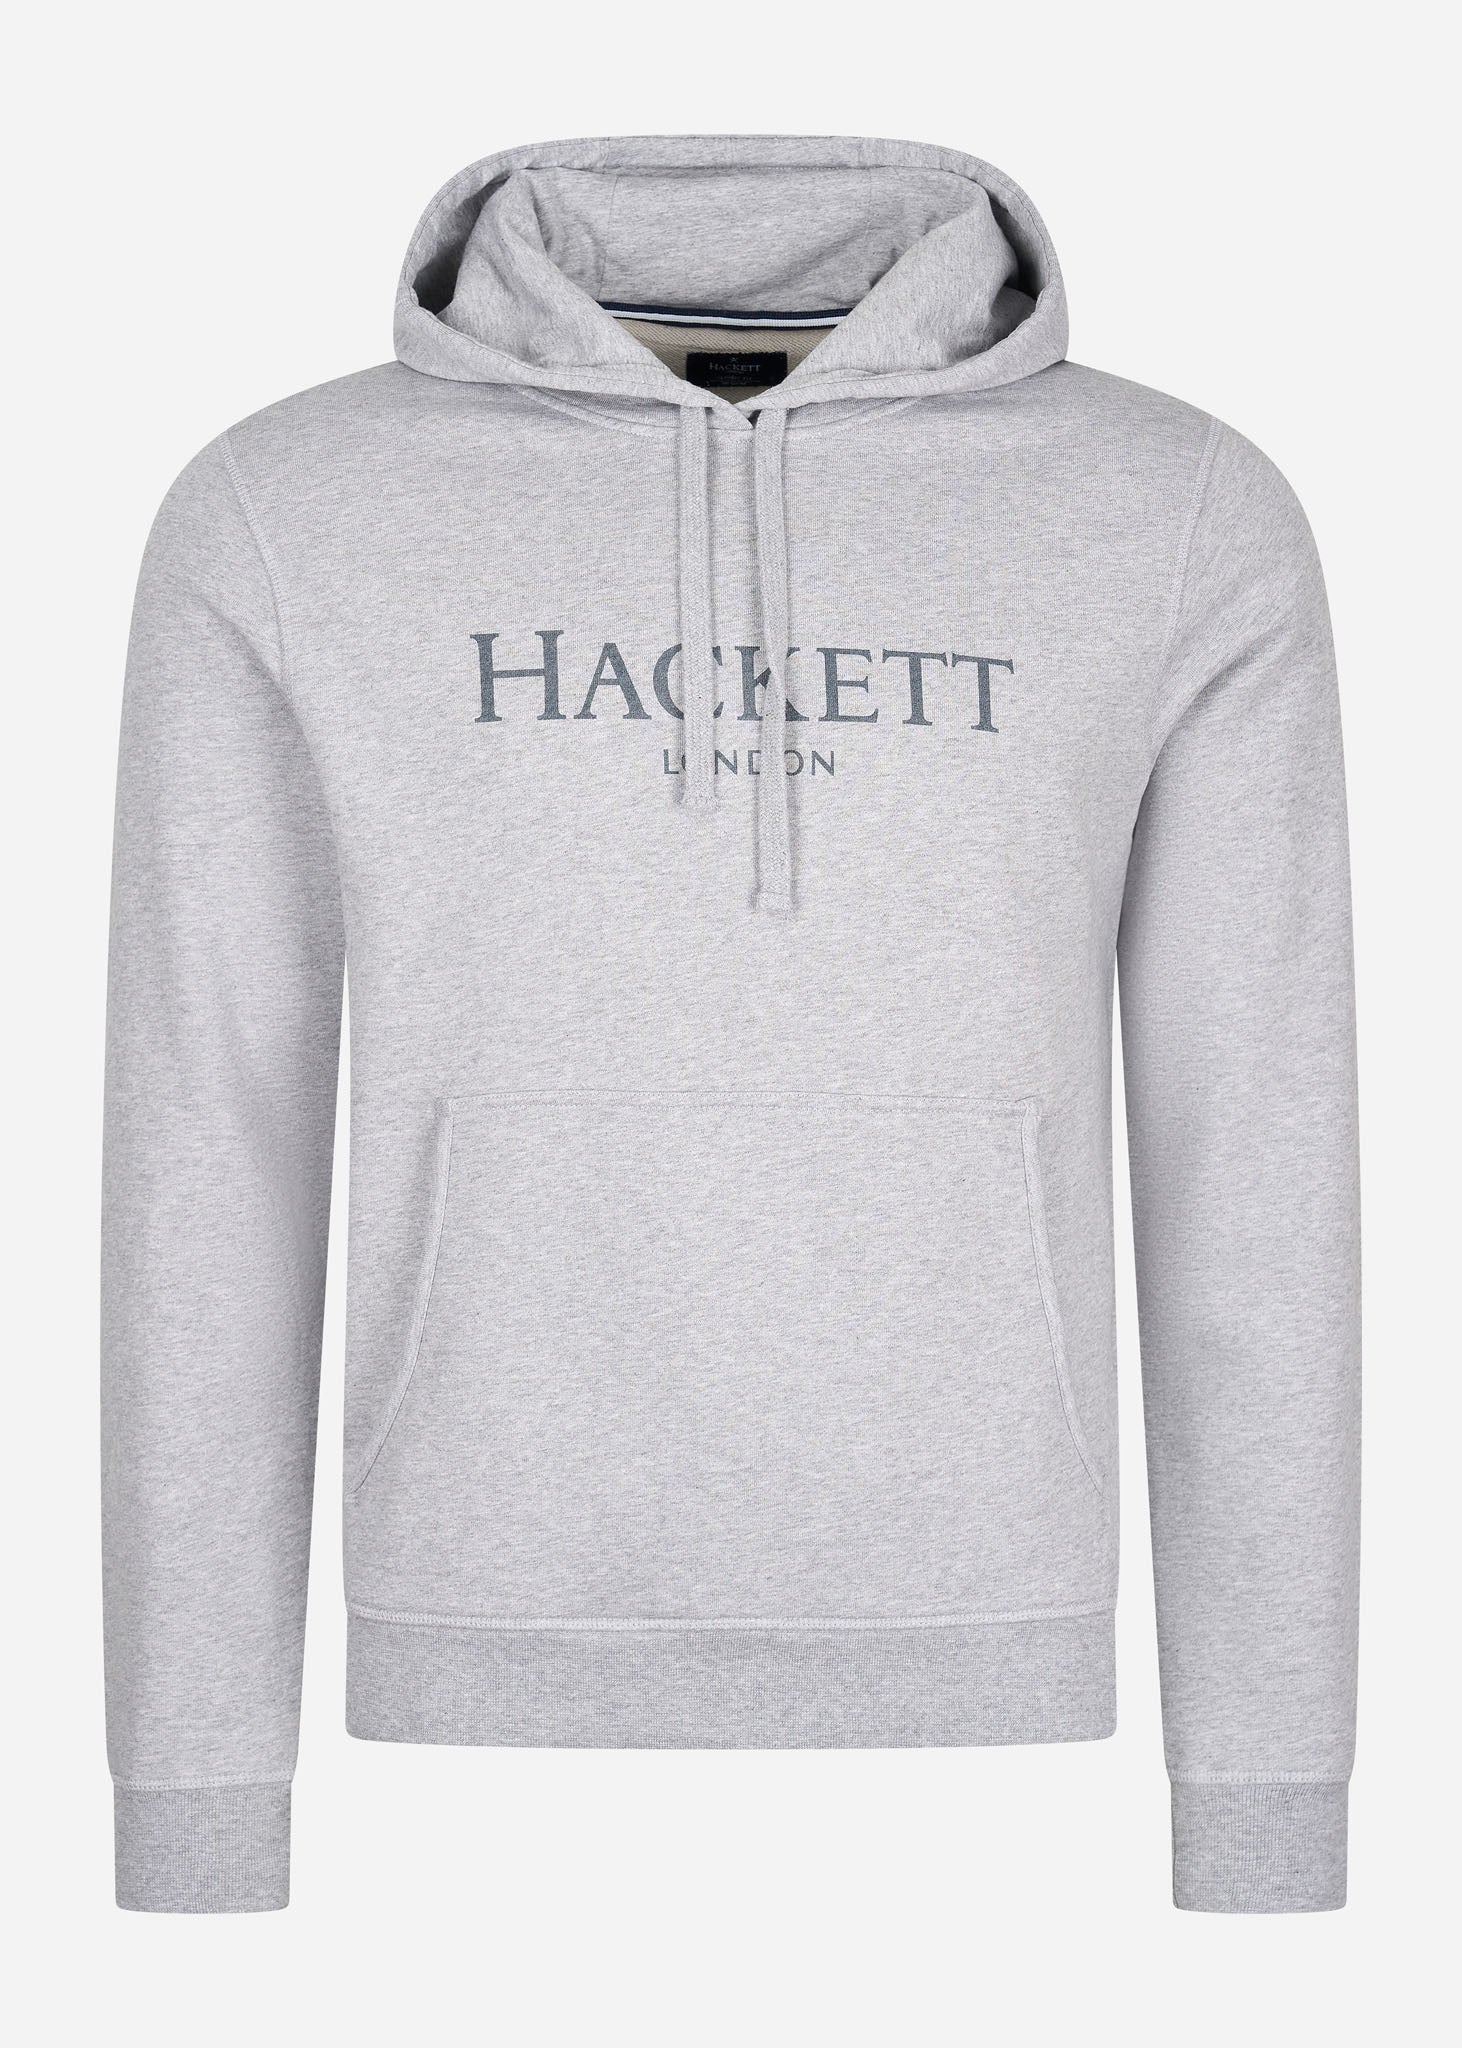 Hackett London Hoodies  Logo hoodie - light grey marl 